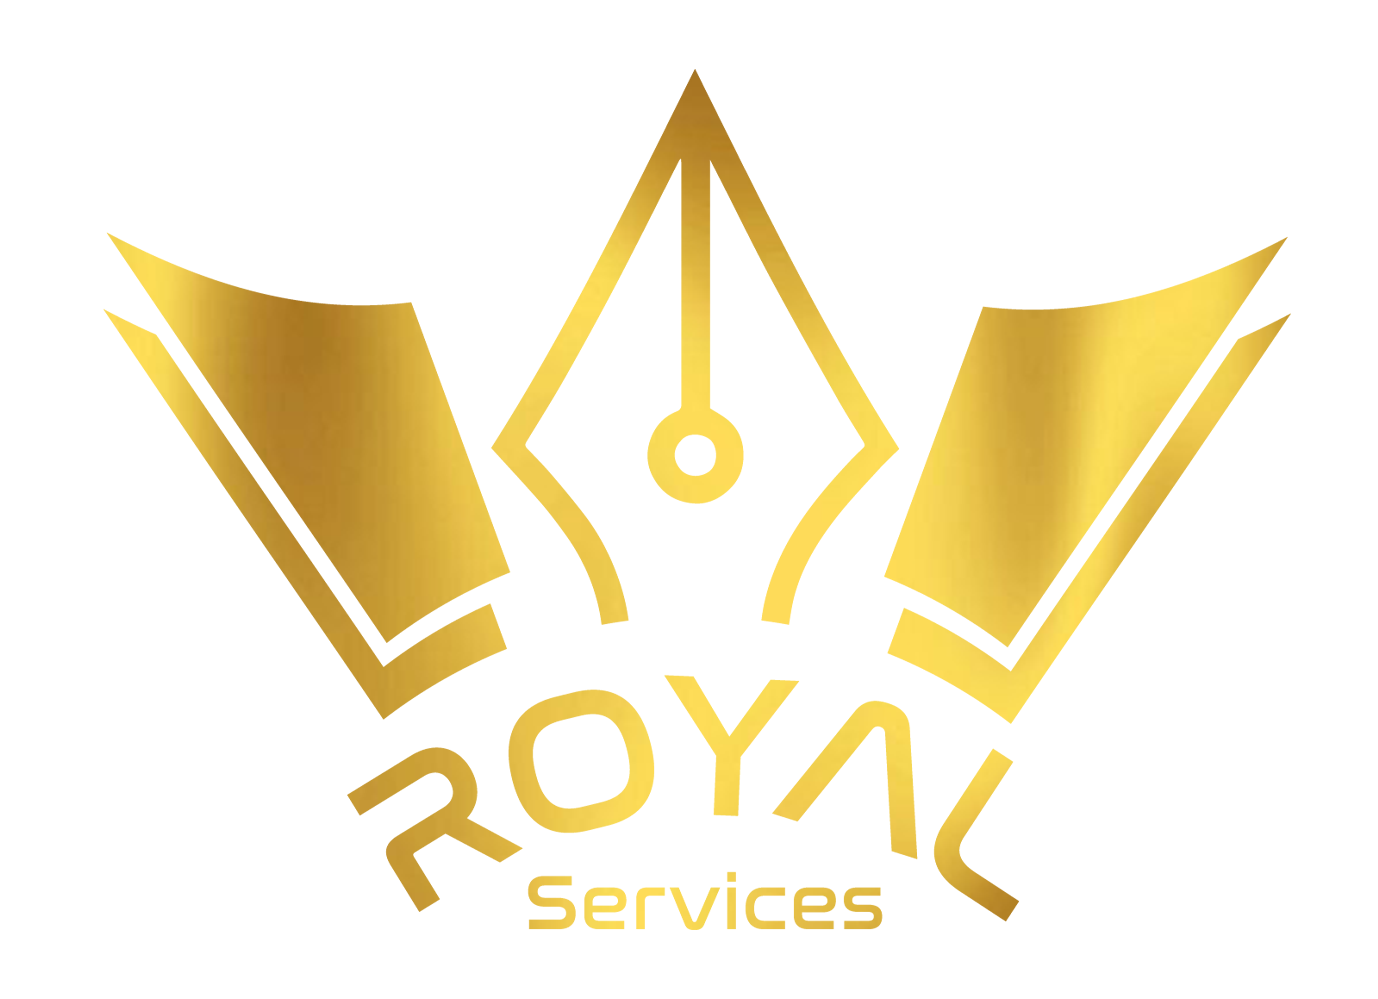 Royal services logo